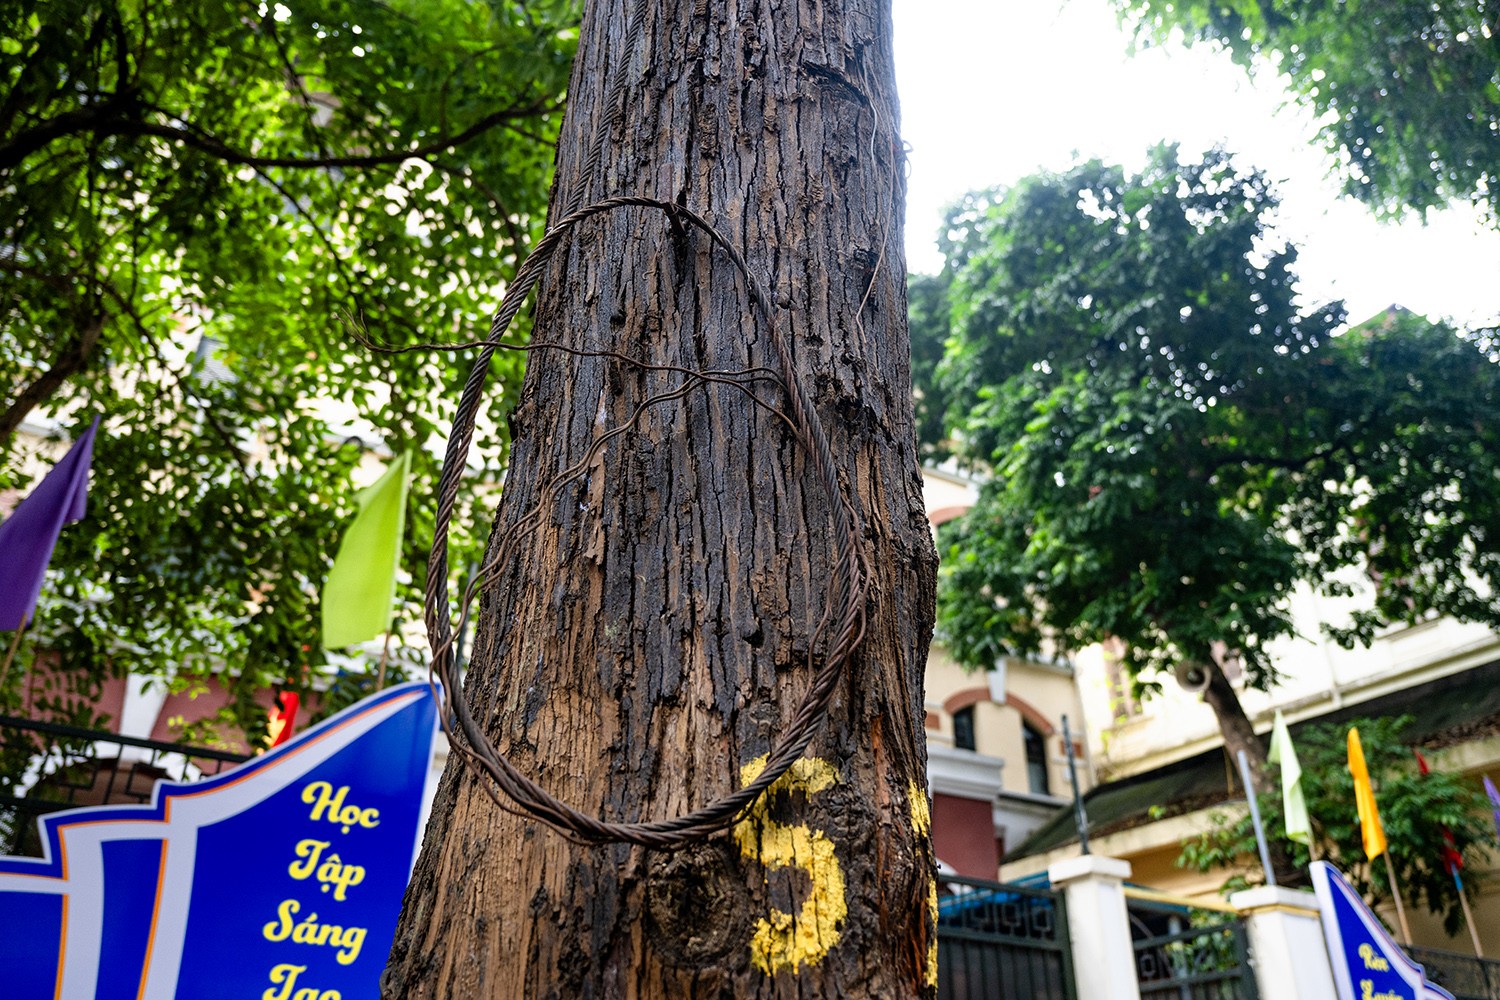 Sao đen là một trong những loại cây có gỗ quý, nằm trong nhóm III thuộc danh sách gỗ quý của Việt Nam. Thế nhưng hiện tại hàng cây sao đen trên con phố Lò Đúc này đang bị "bức tử" mỗi ngày.